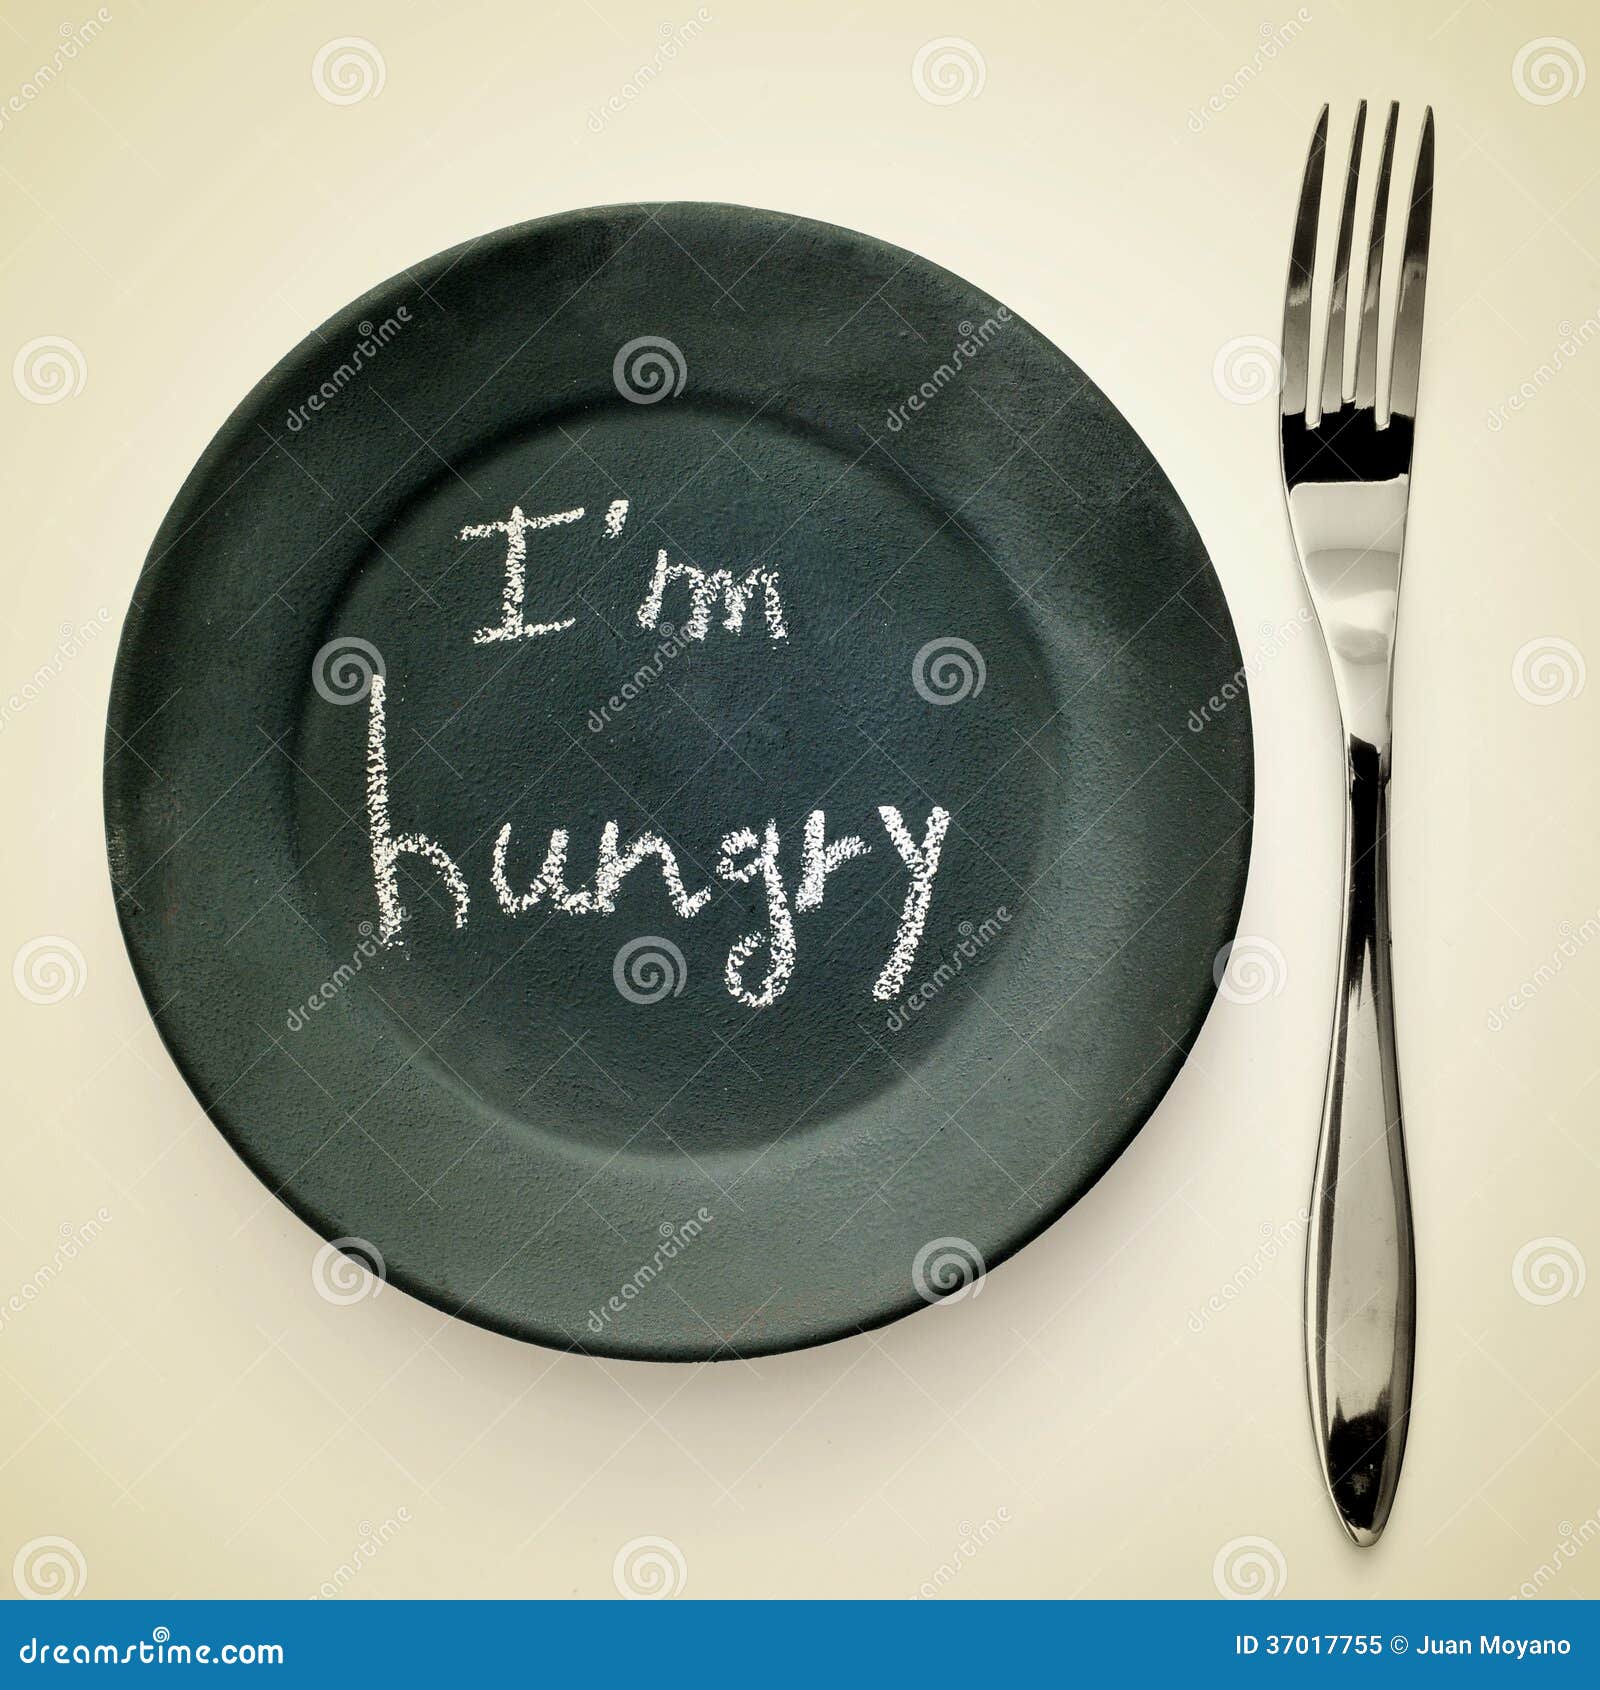 i am hungry